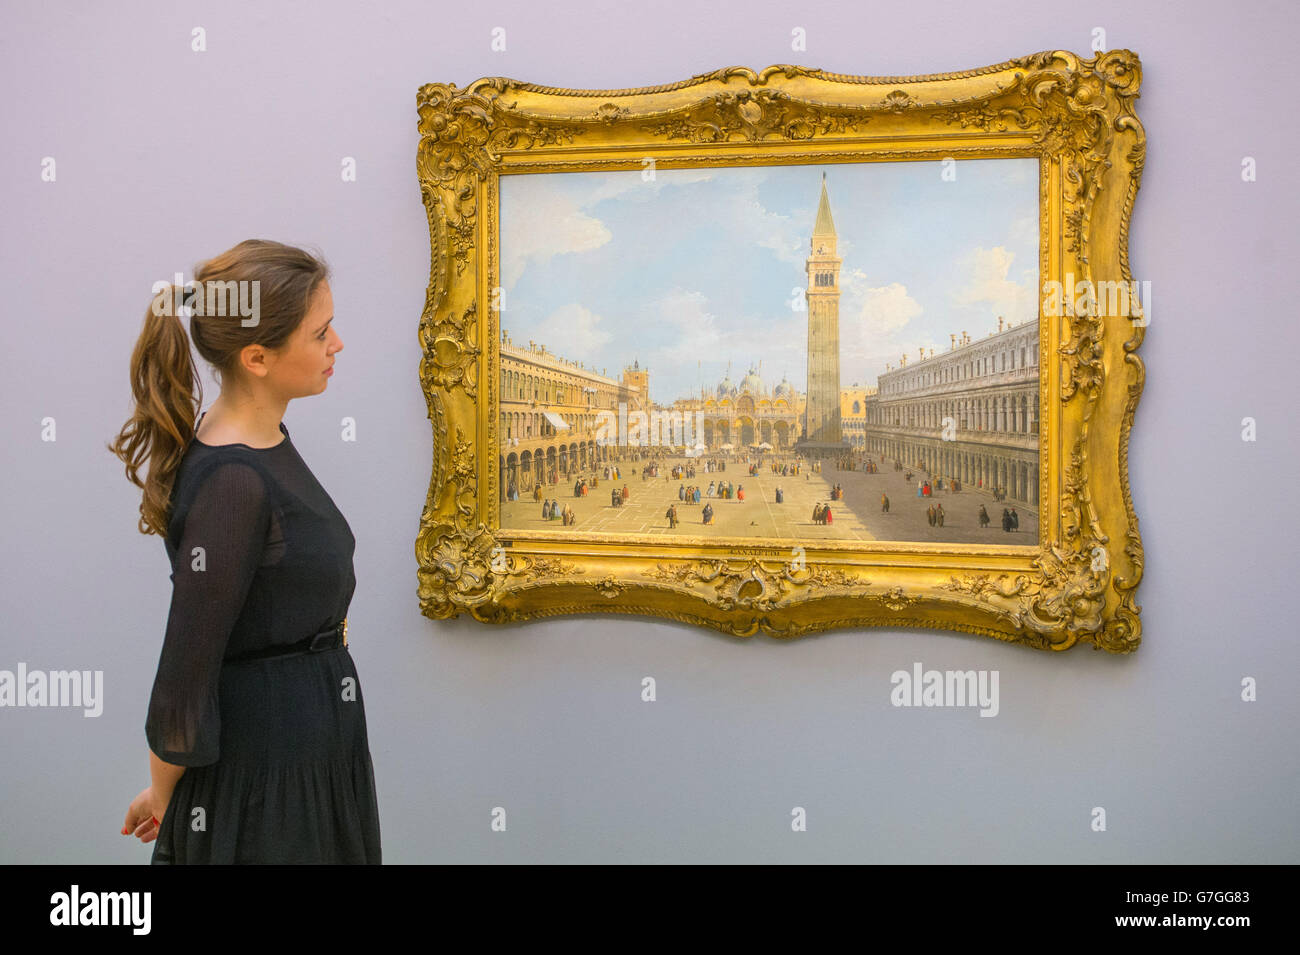 Un employé de Sotheby regarde Venise, la Piazza San Marco en direction de l'est vers la basilique par Canaletto à la galerie Sotheby, à Mayfair, Londres, qui fait partie de leur ancien Maître et British Paintings Evening sale. Banque D'Images